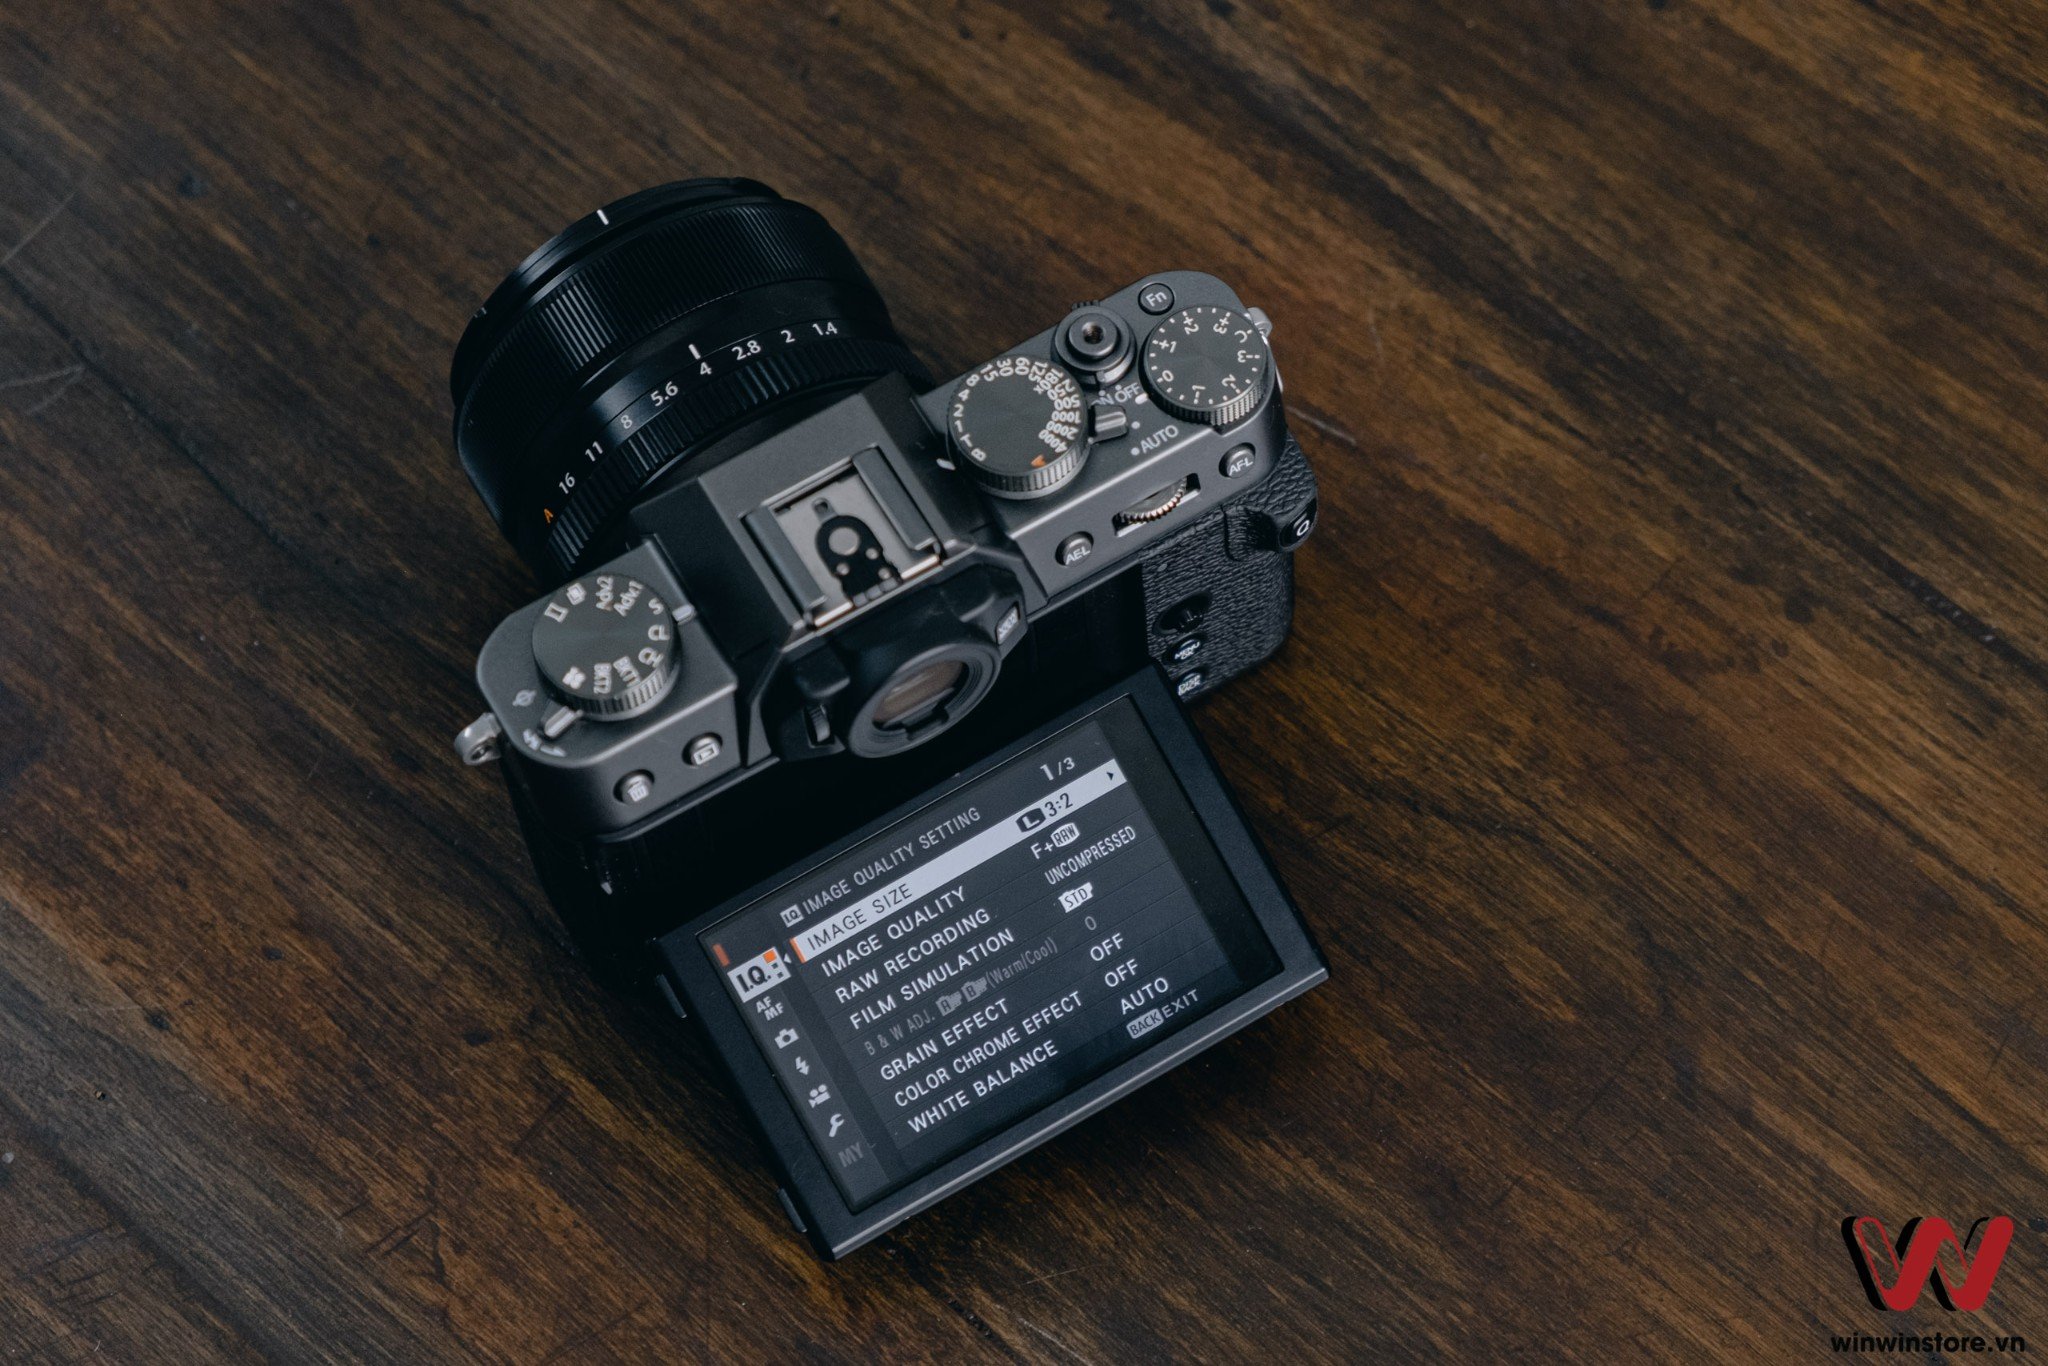 Trên tay Fujifilm X-T30 và XF 35mm F1.4, combo máy ảnh và ống kính giá dưới 30tr